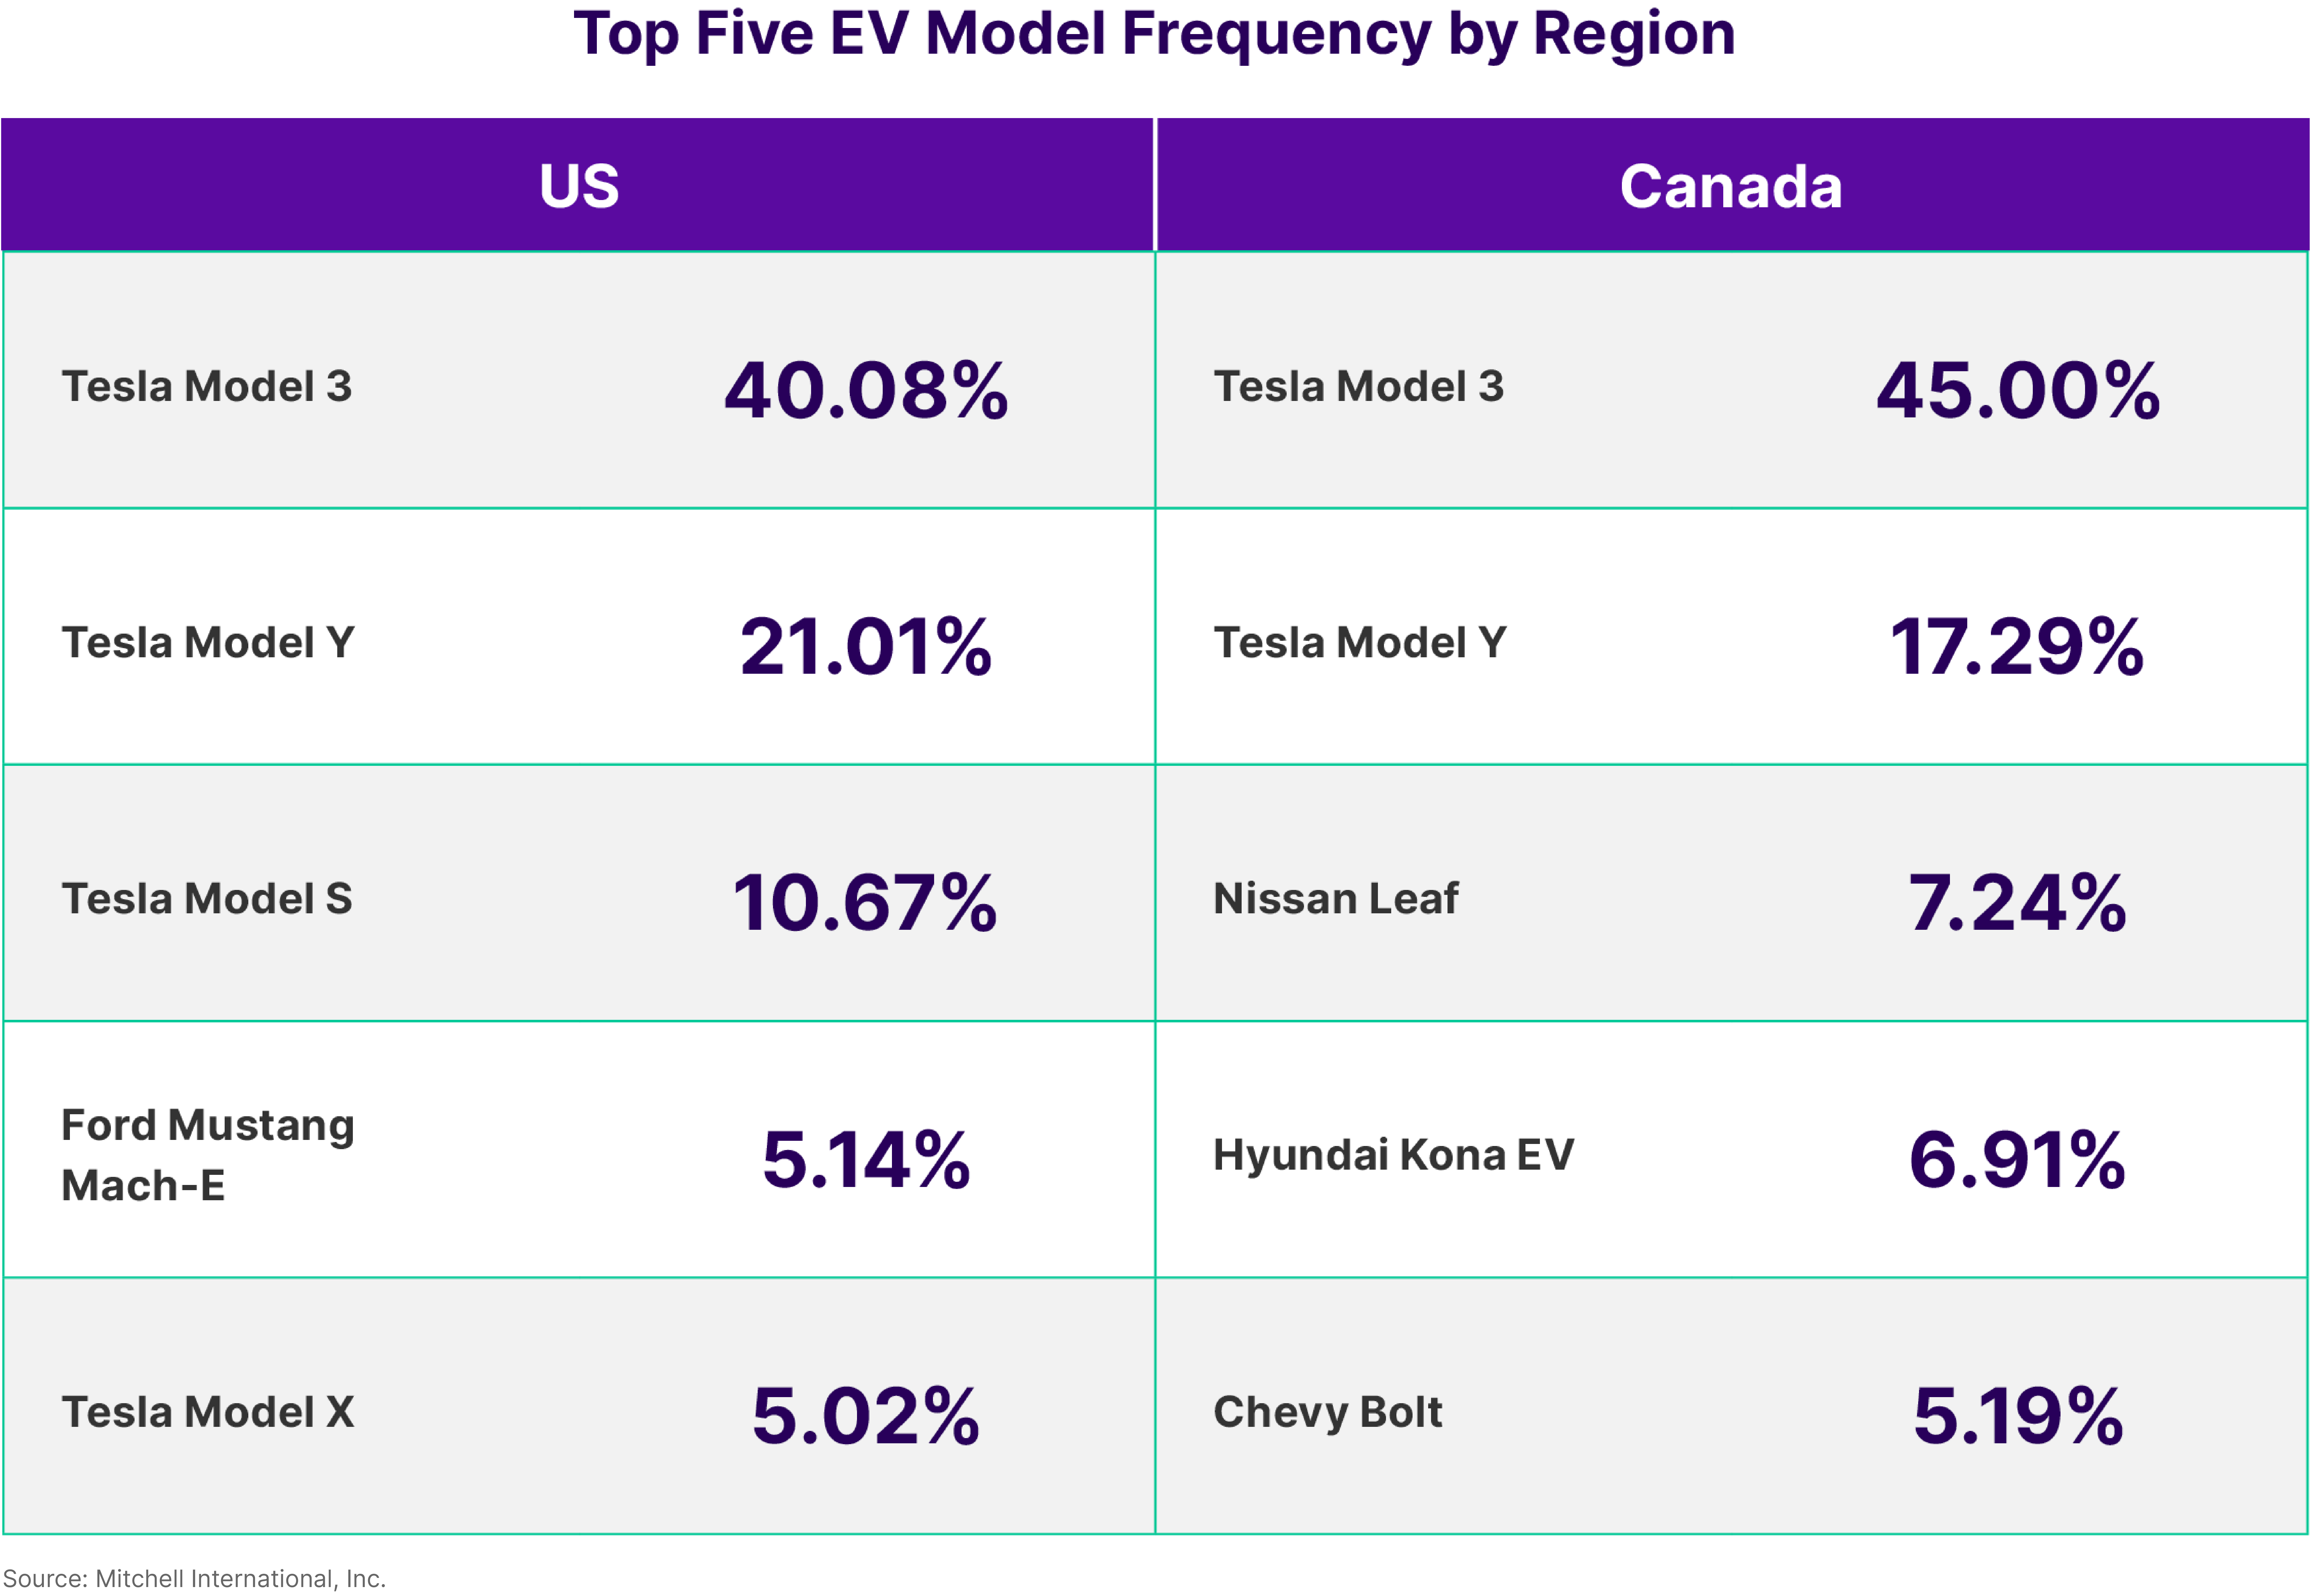 Top EV Model Frequency by Region